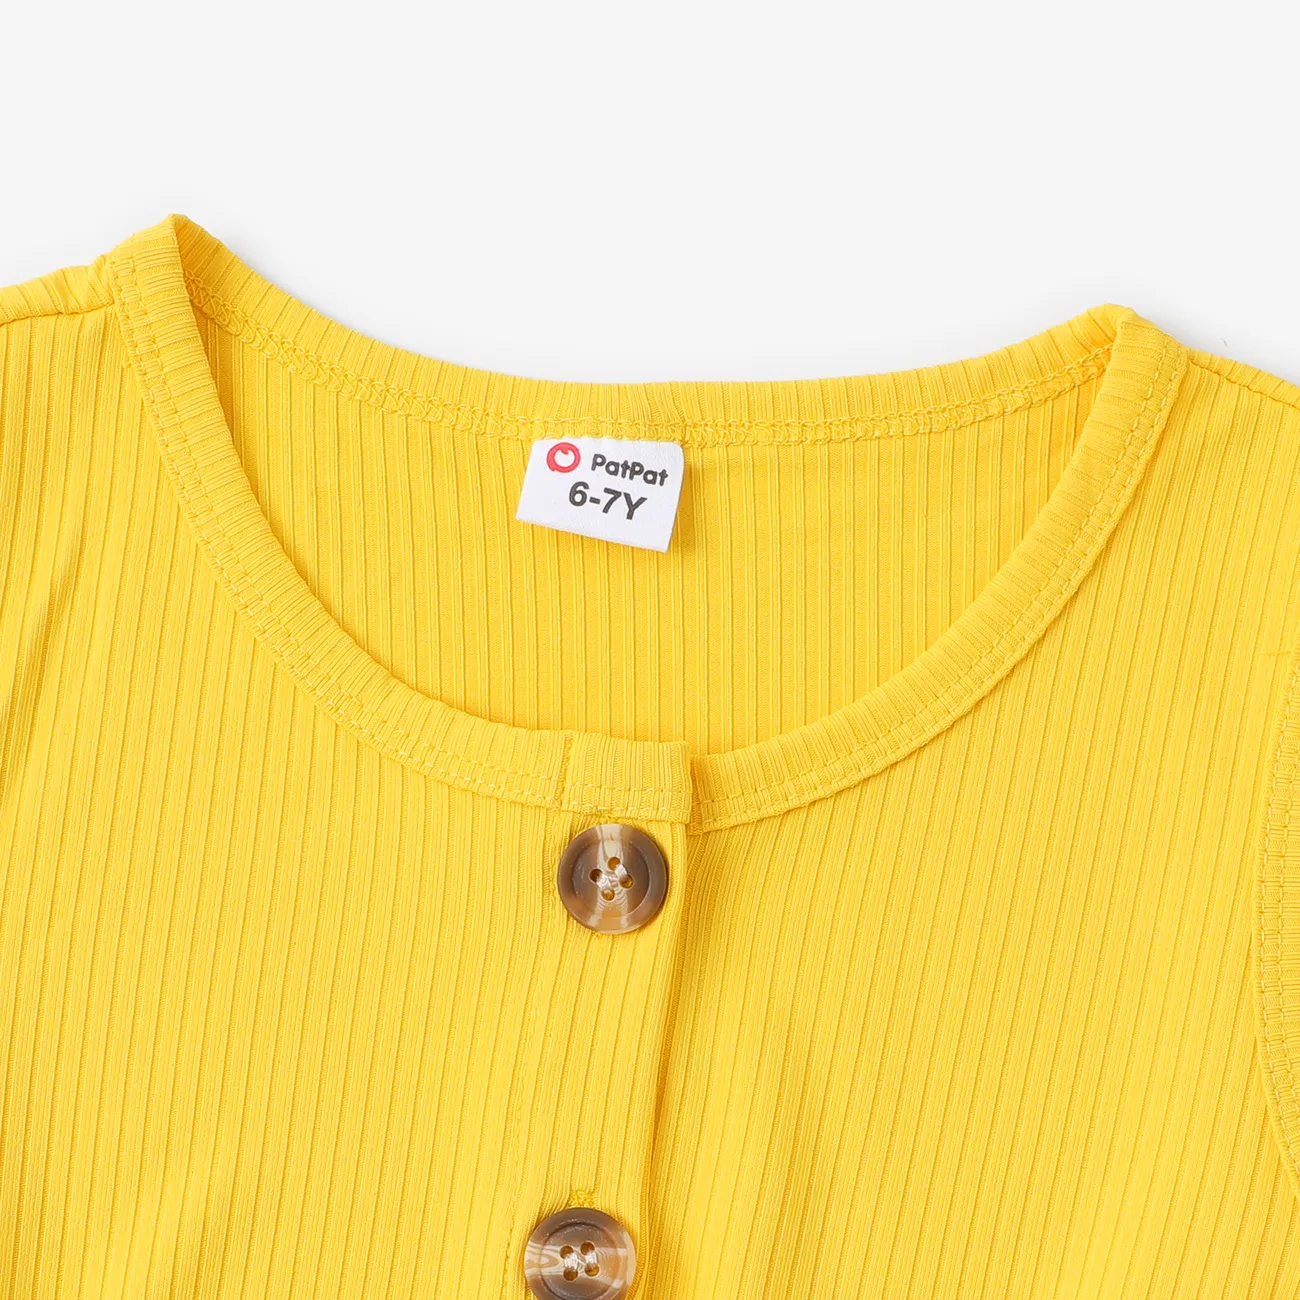 2 件兒童女孩花卉印花羅紋拼接鈕扣設計無袖束帶連身衣 黃色 big image 1